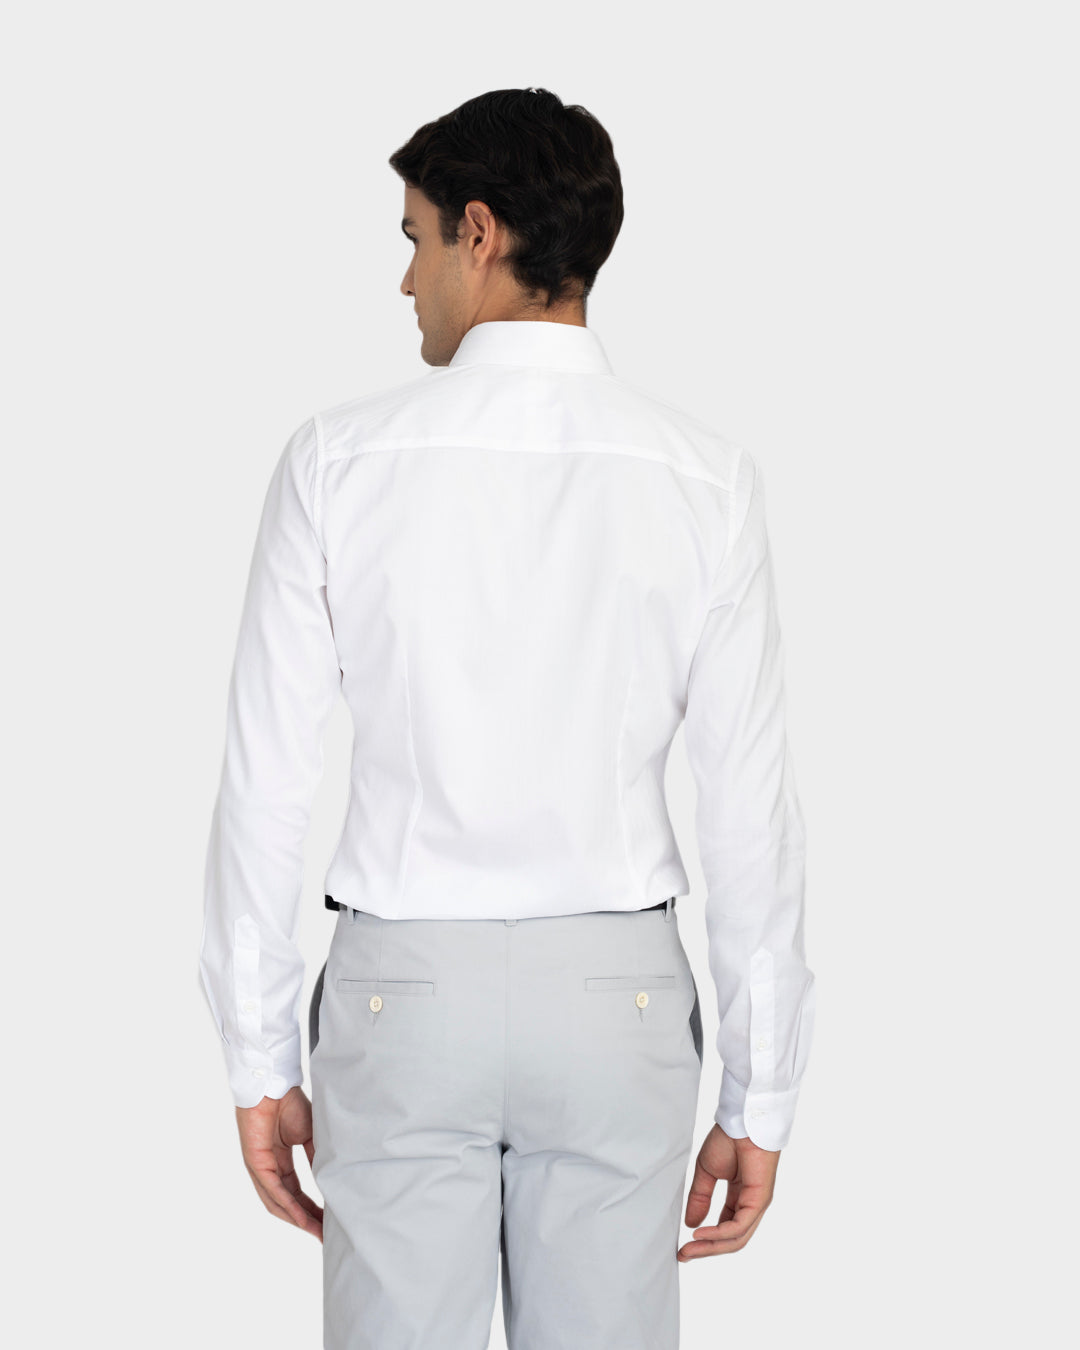 Brembana White Herringbone Shirt